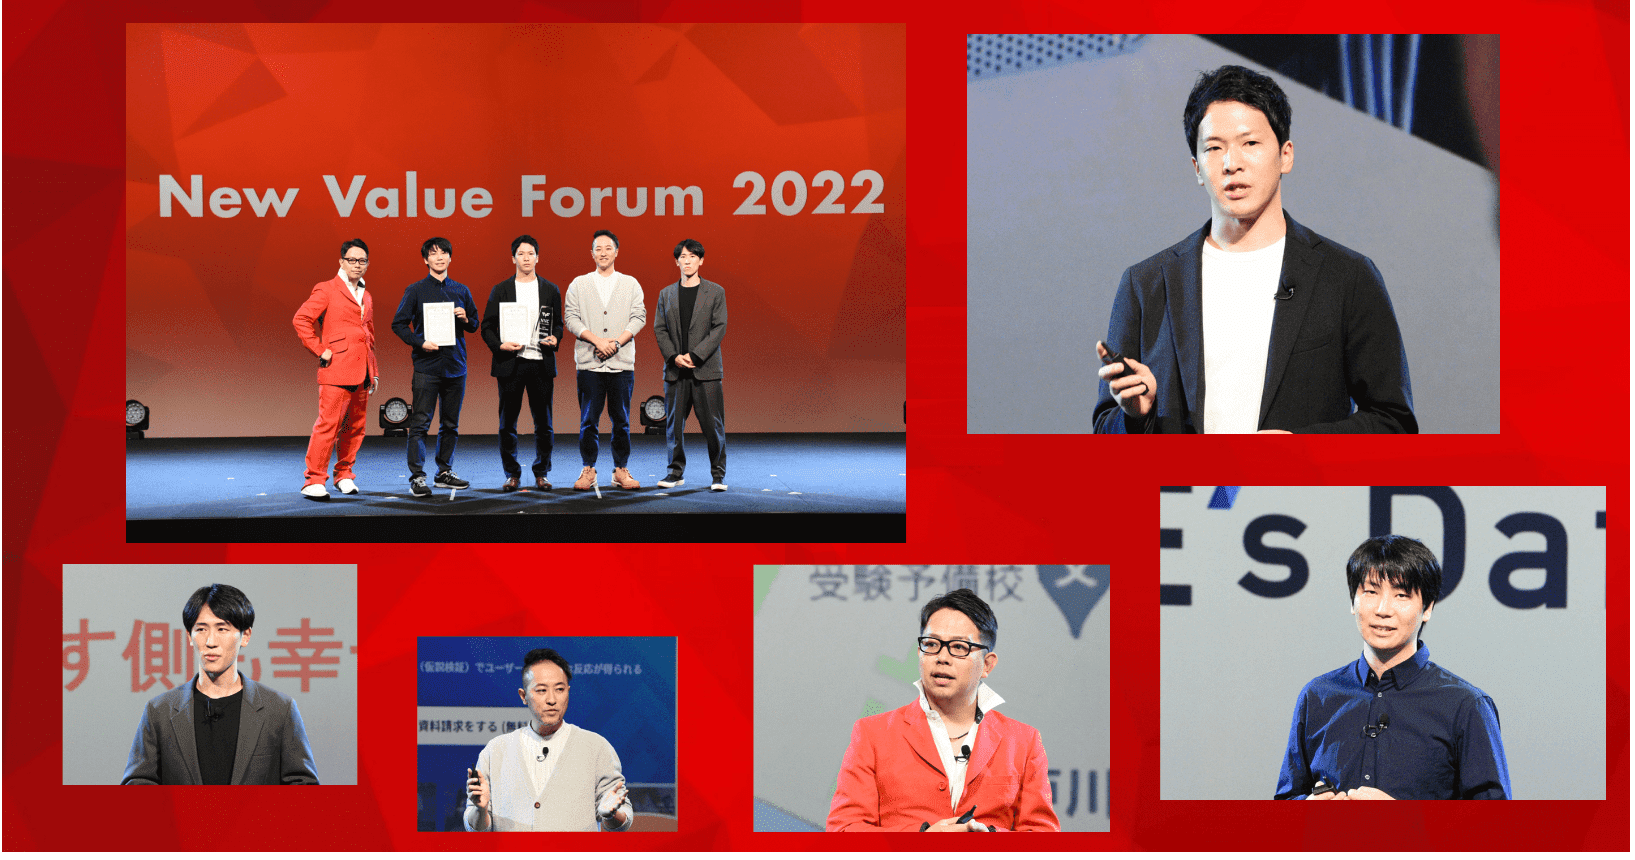 New Value Forum 2022